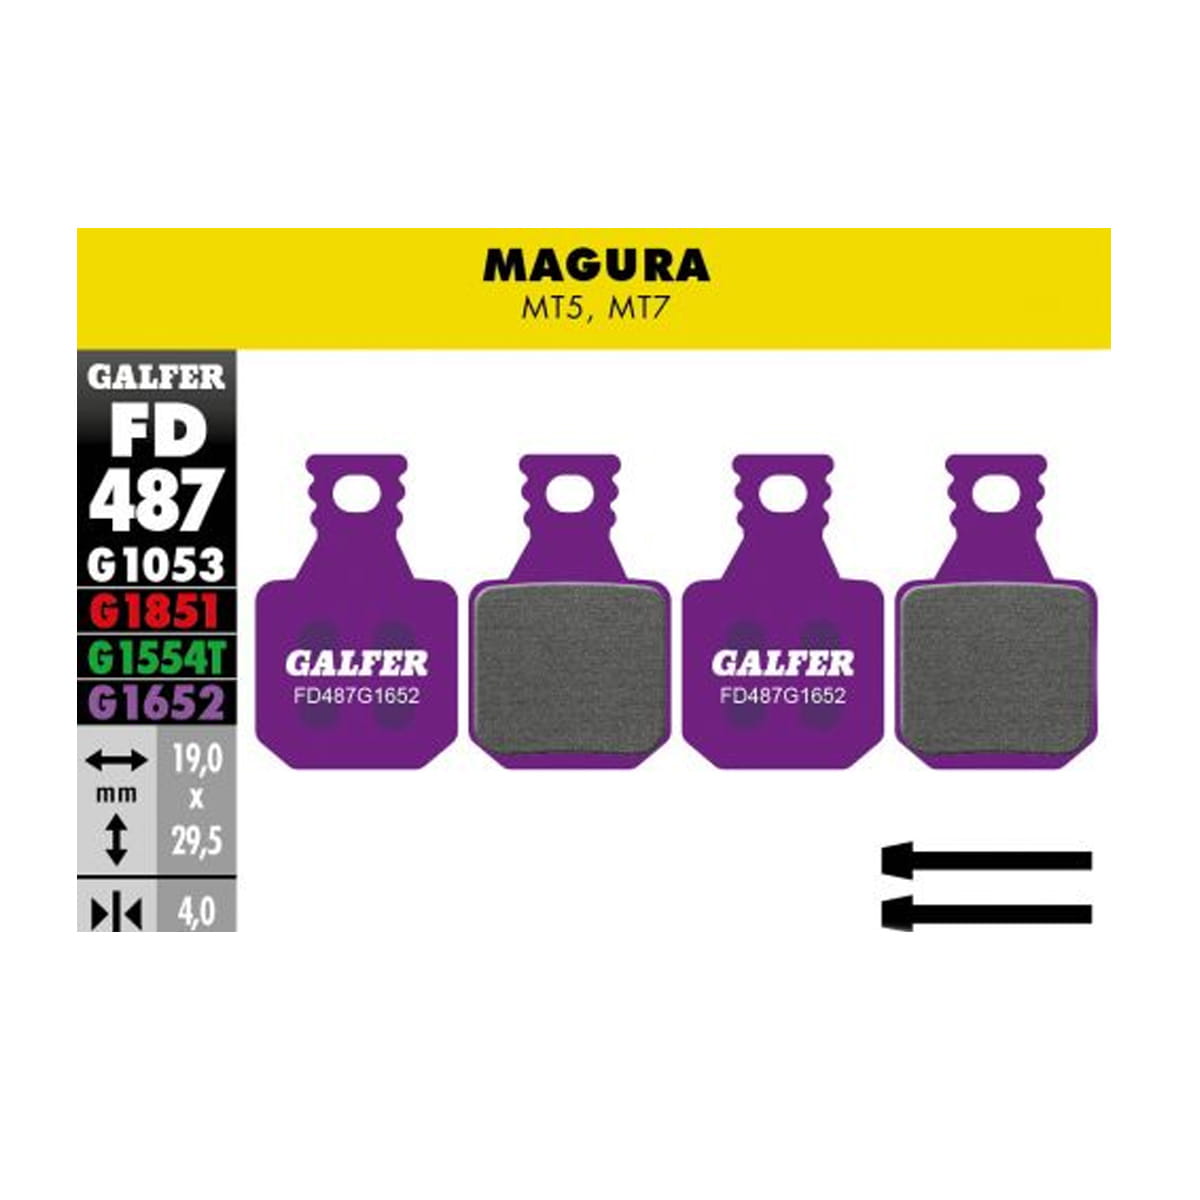 Galfer E-Bike Bremsbelag G1652 Magura MT5/MT7 - Violett